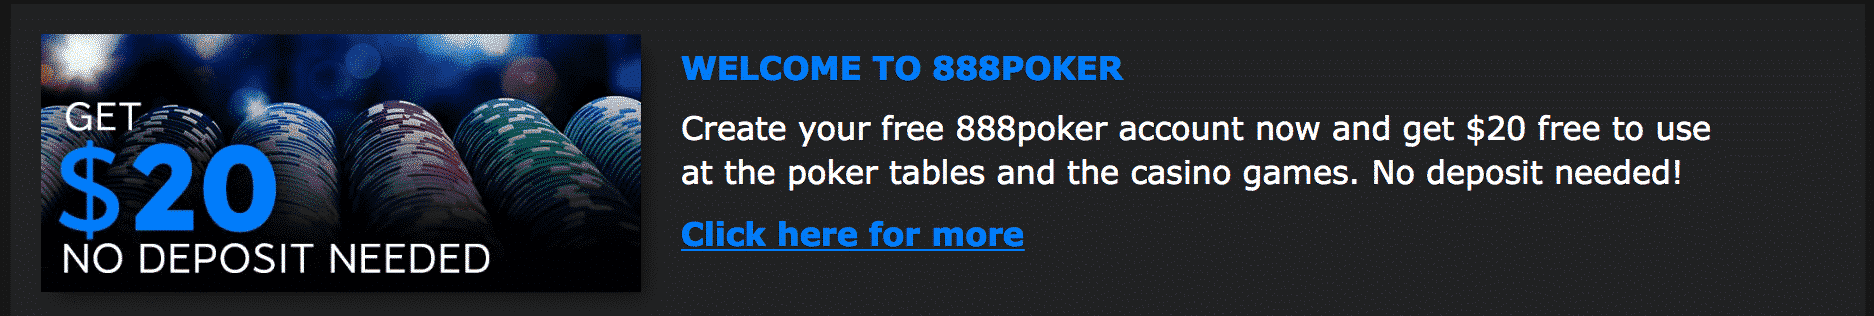 888 poker register bonus